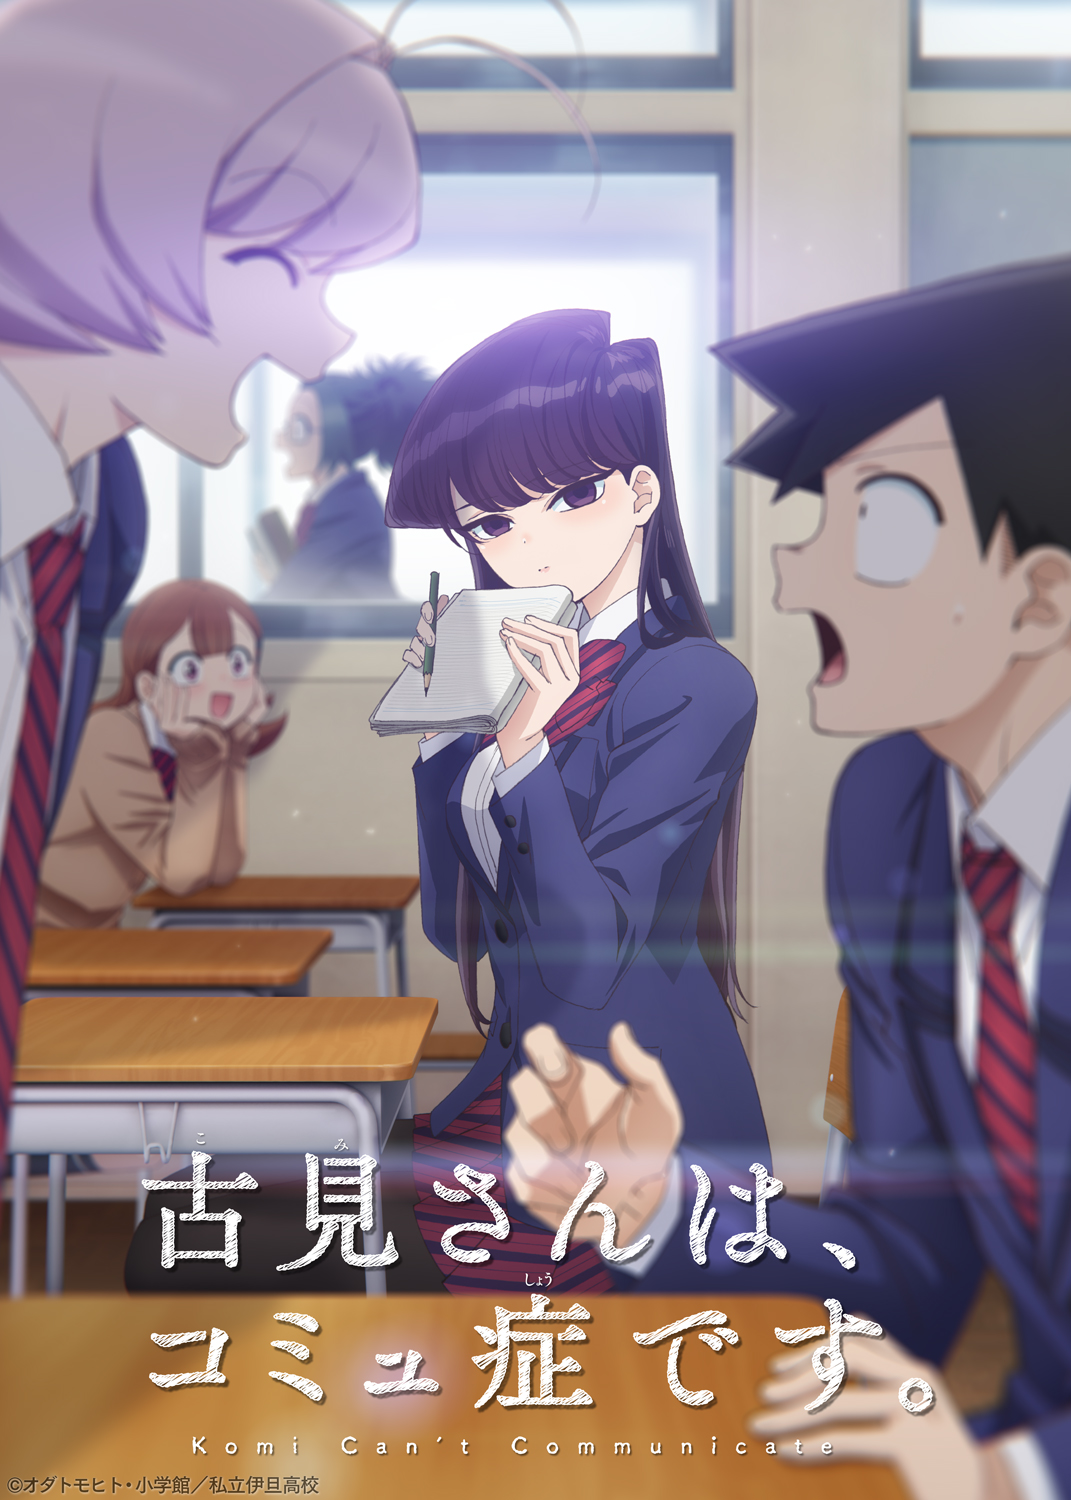 Komi-san Anime Trailer key visual